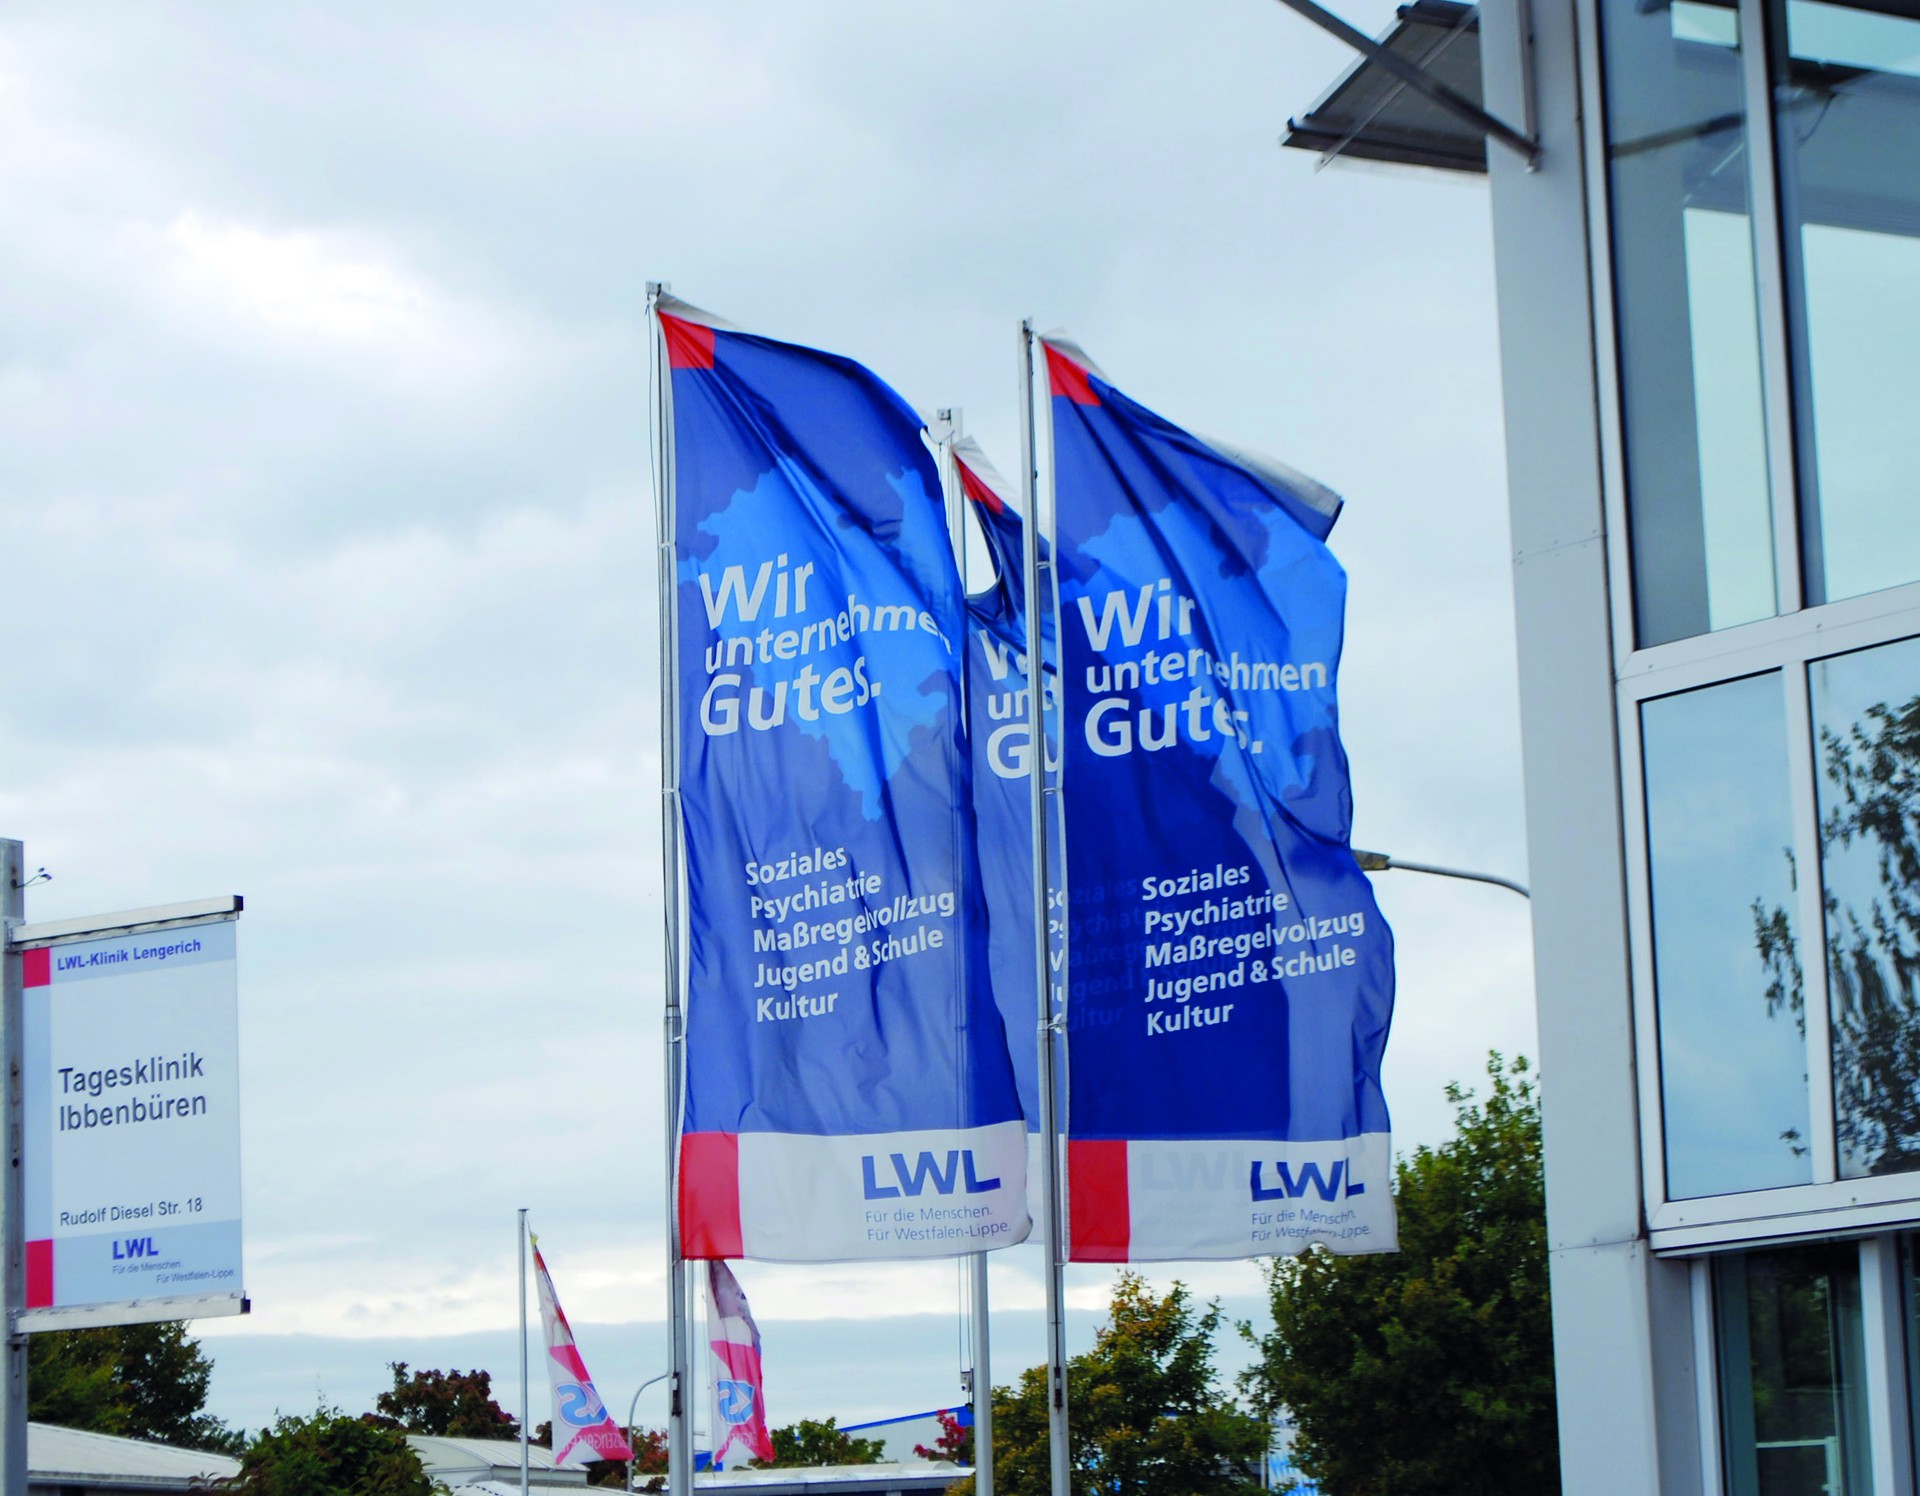 Drei blaue Flaggen des Landschaftsverbandes Westfalen-Lippe mit weißer Aufschrift "Wir unternehmen Gutes" wehen vor einem Gebäude mit großen Fenstern